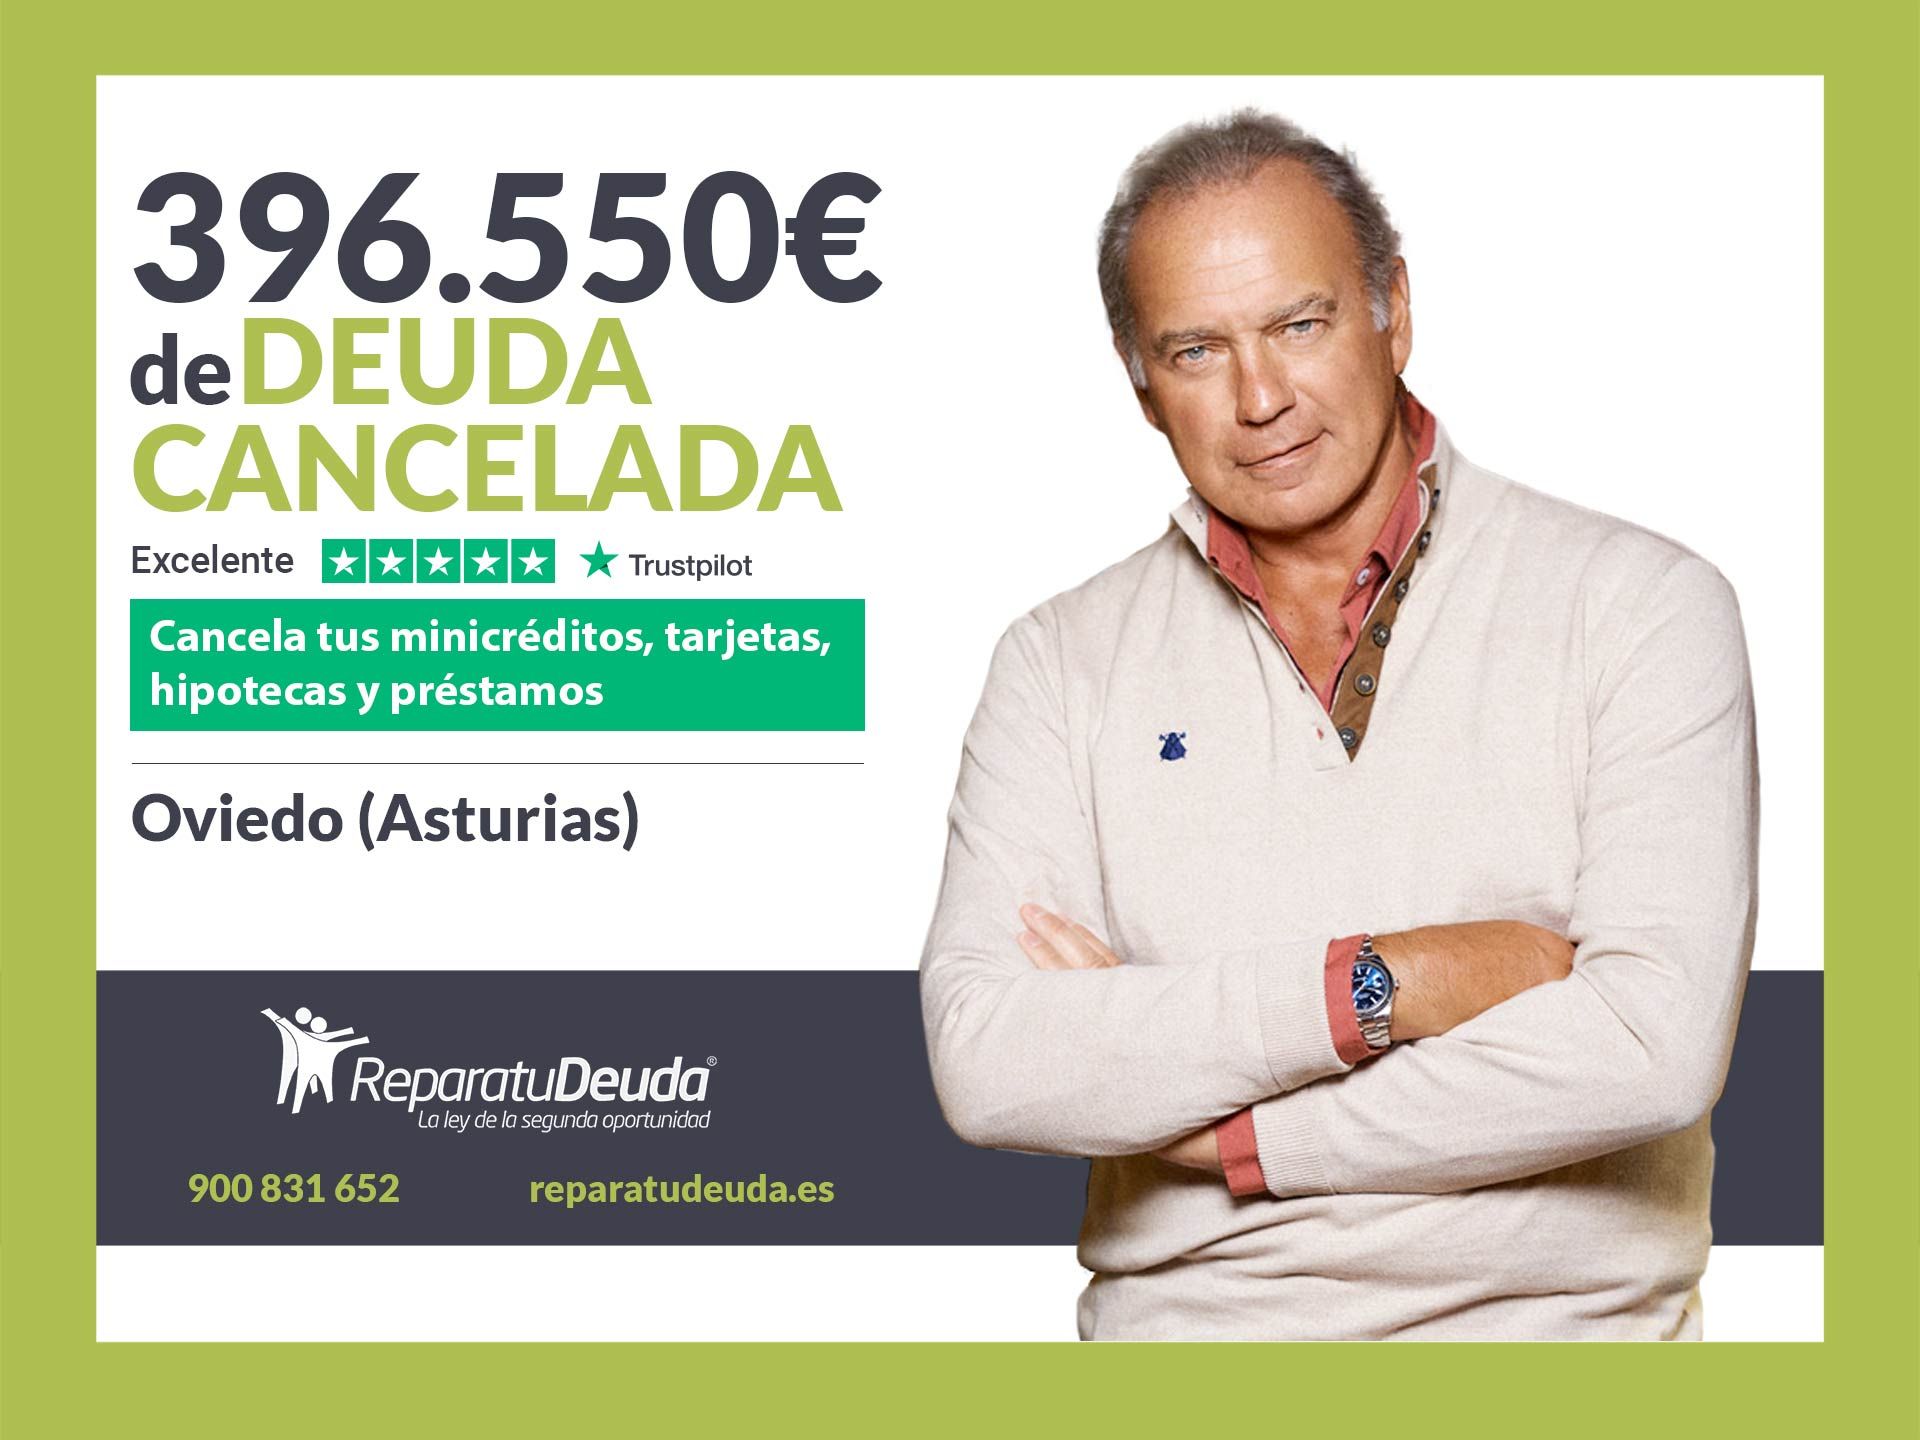 Repara tu Deuda Abogados cancela 396.550? en Oviedo (Asturias) con la Ley de Segunda Oportunidad